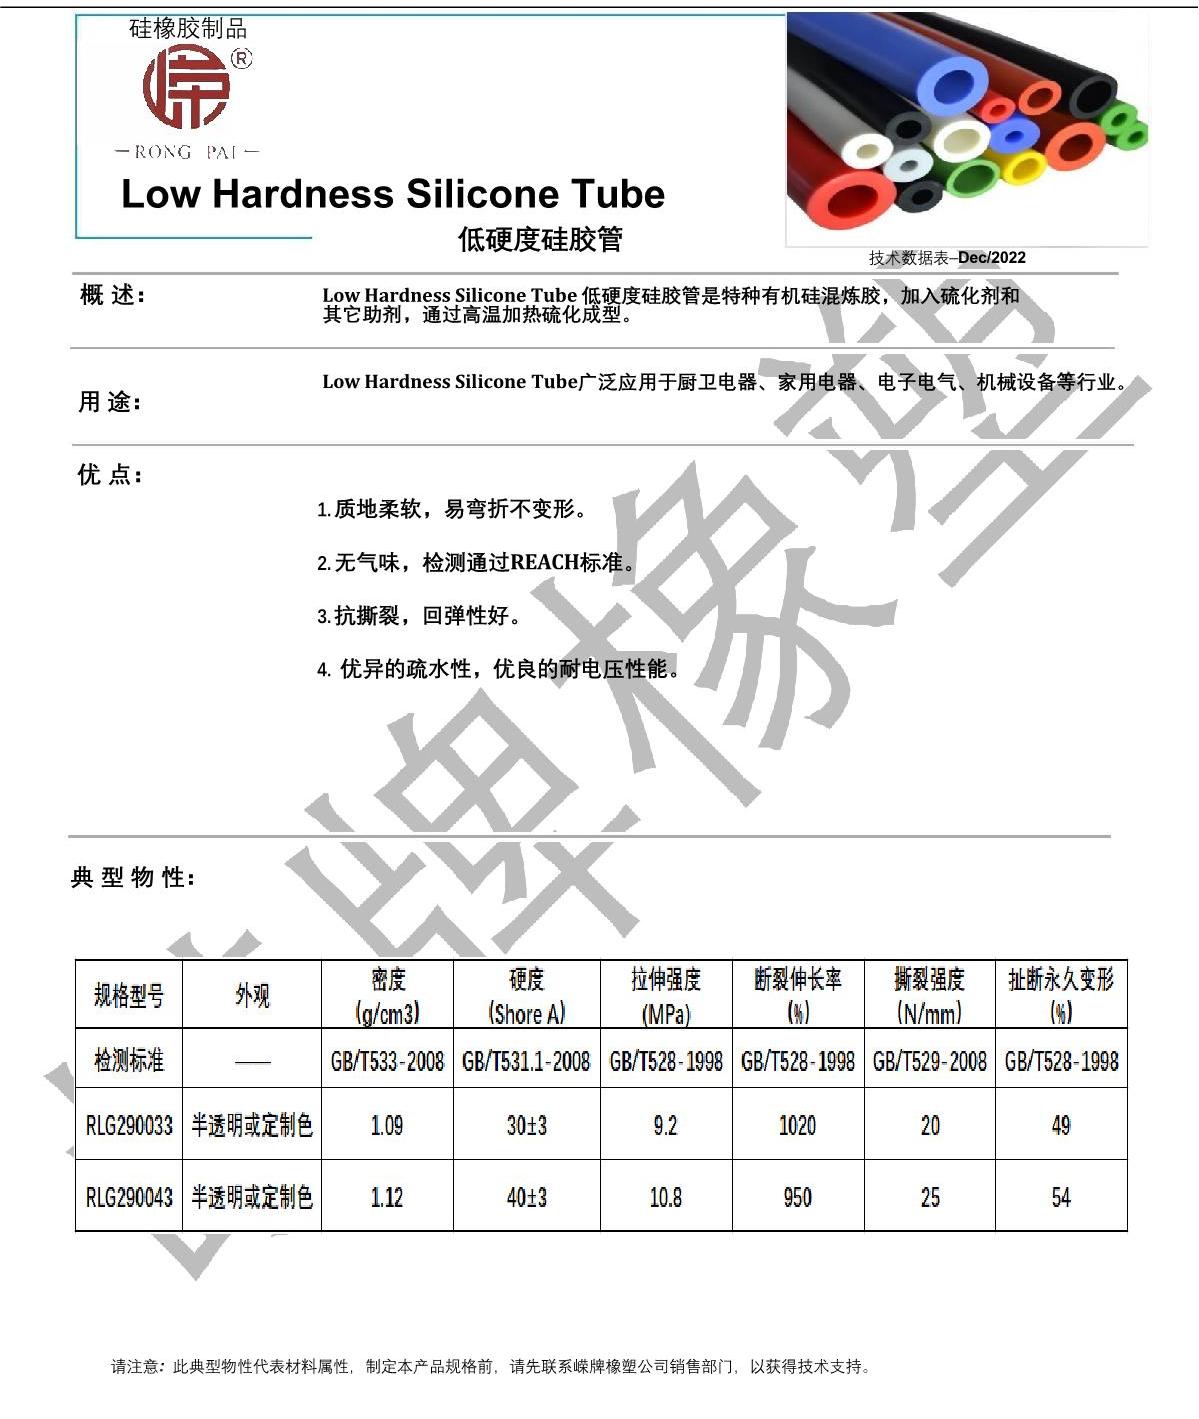 低硬度硅胶管产品说明_1.JPG